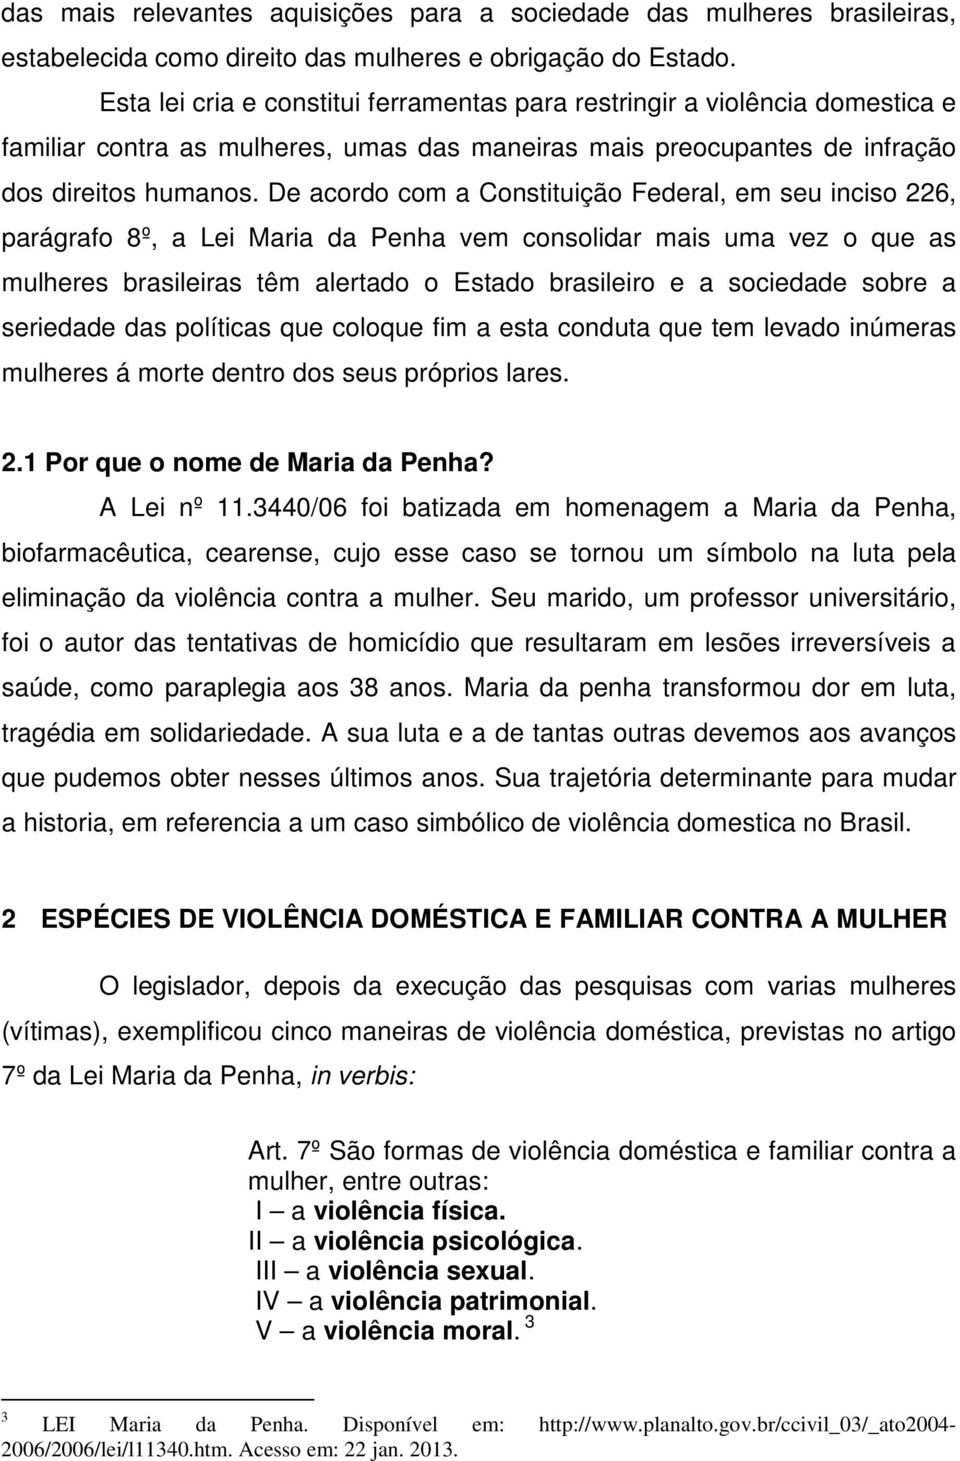 De acordo com a Constituição Federal, em seu inciso 226, parágrafo 8º, a Lei Maria da Penha vem consolidar mais uma vez o que as mulheres brasileiras têm alertado o Estado brasileiro e a sociedade